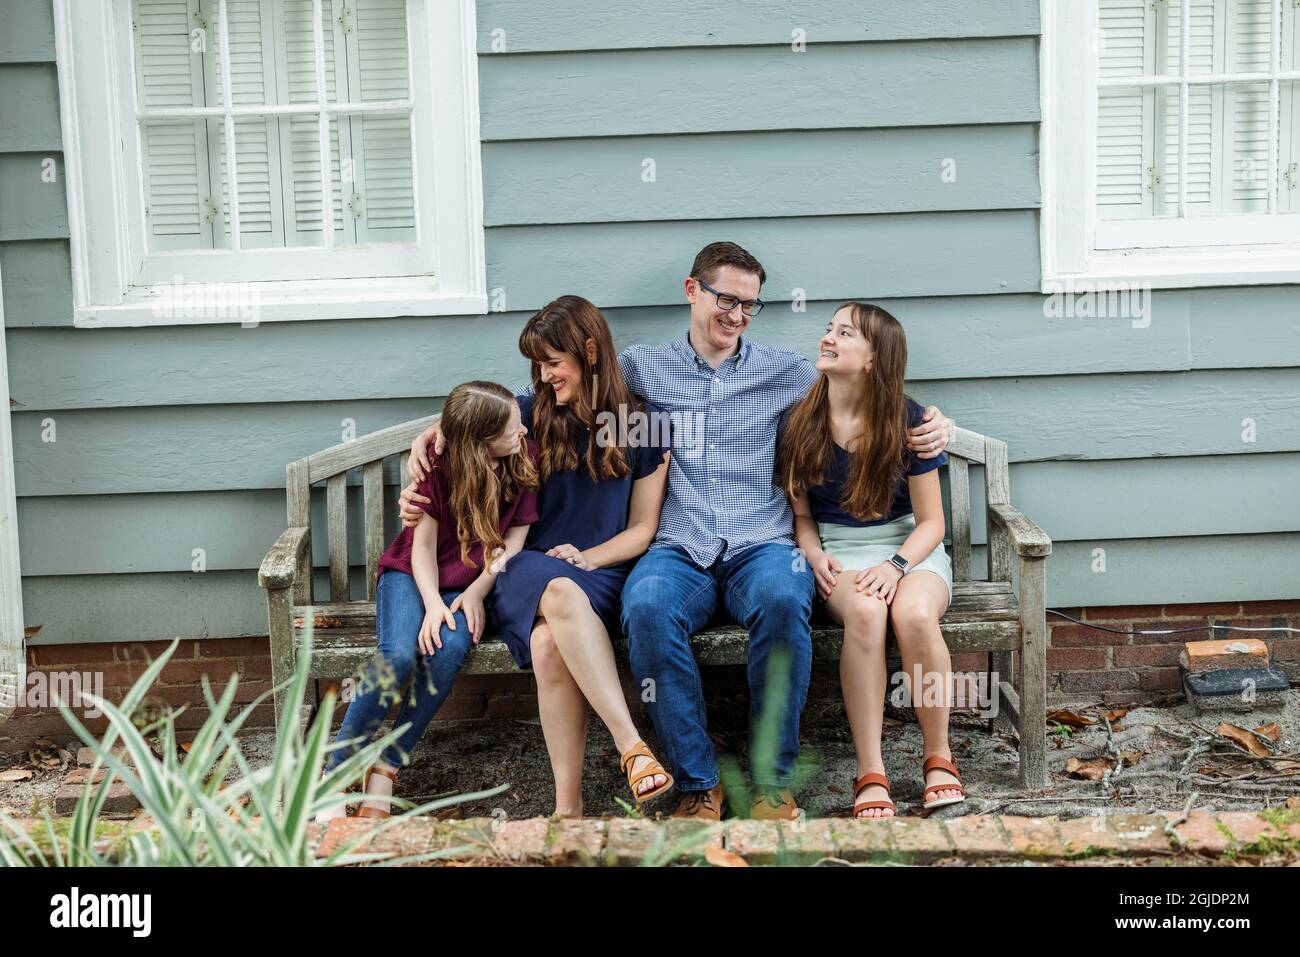 Eine vierköpfige Familie mit Mutter, Vater und zwei Töchtern, die auf einer Bank vor einem blauen Häuschen sitzen Stockfoto